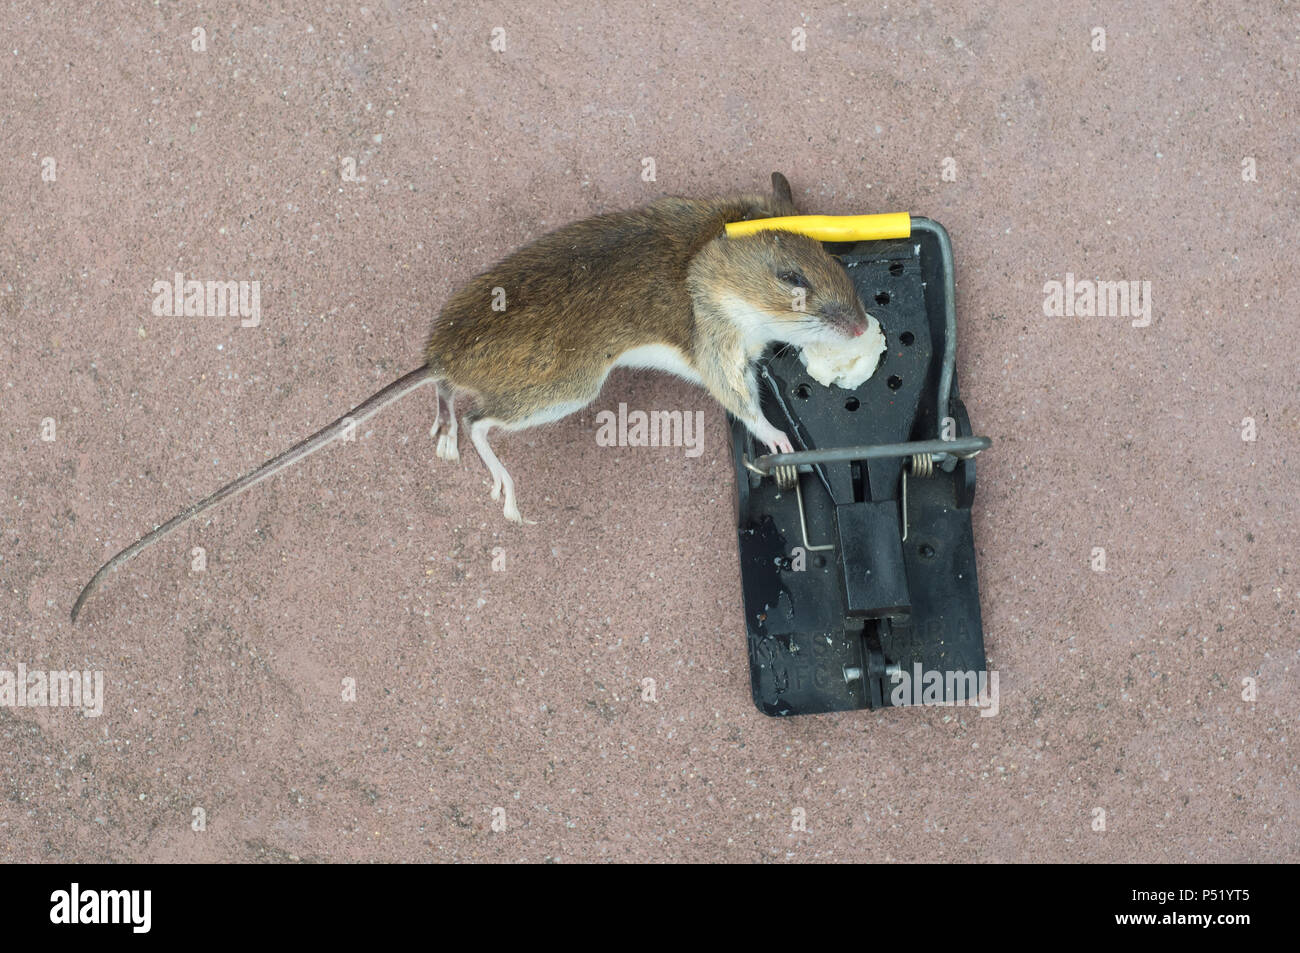 Ein totes Haus Maus in einer Mausefalle Stockfotografie - Alamy